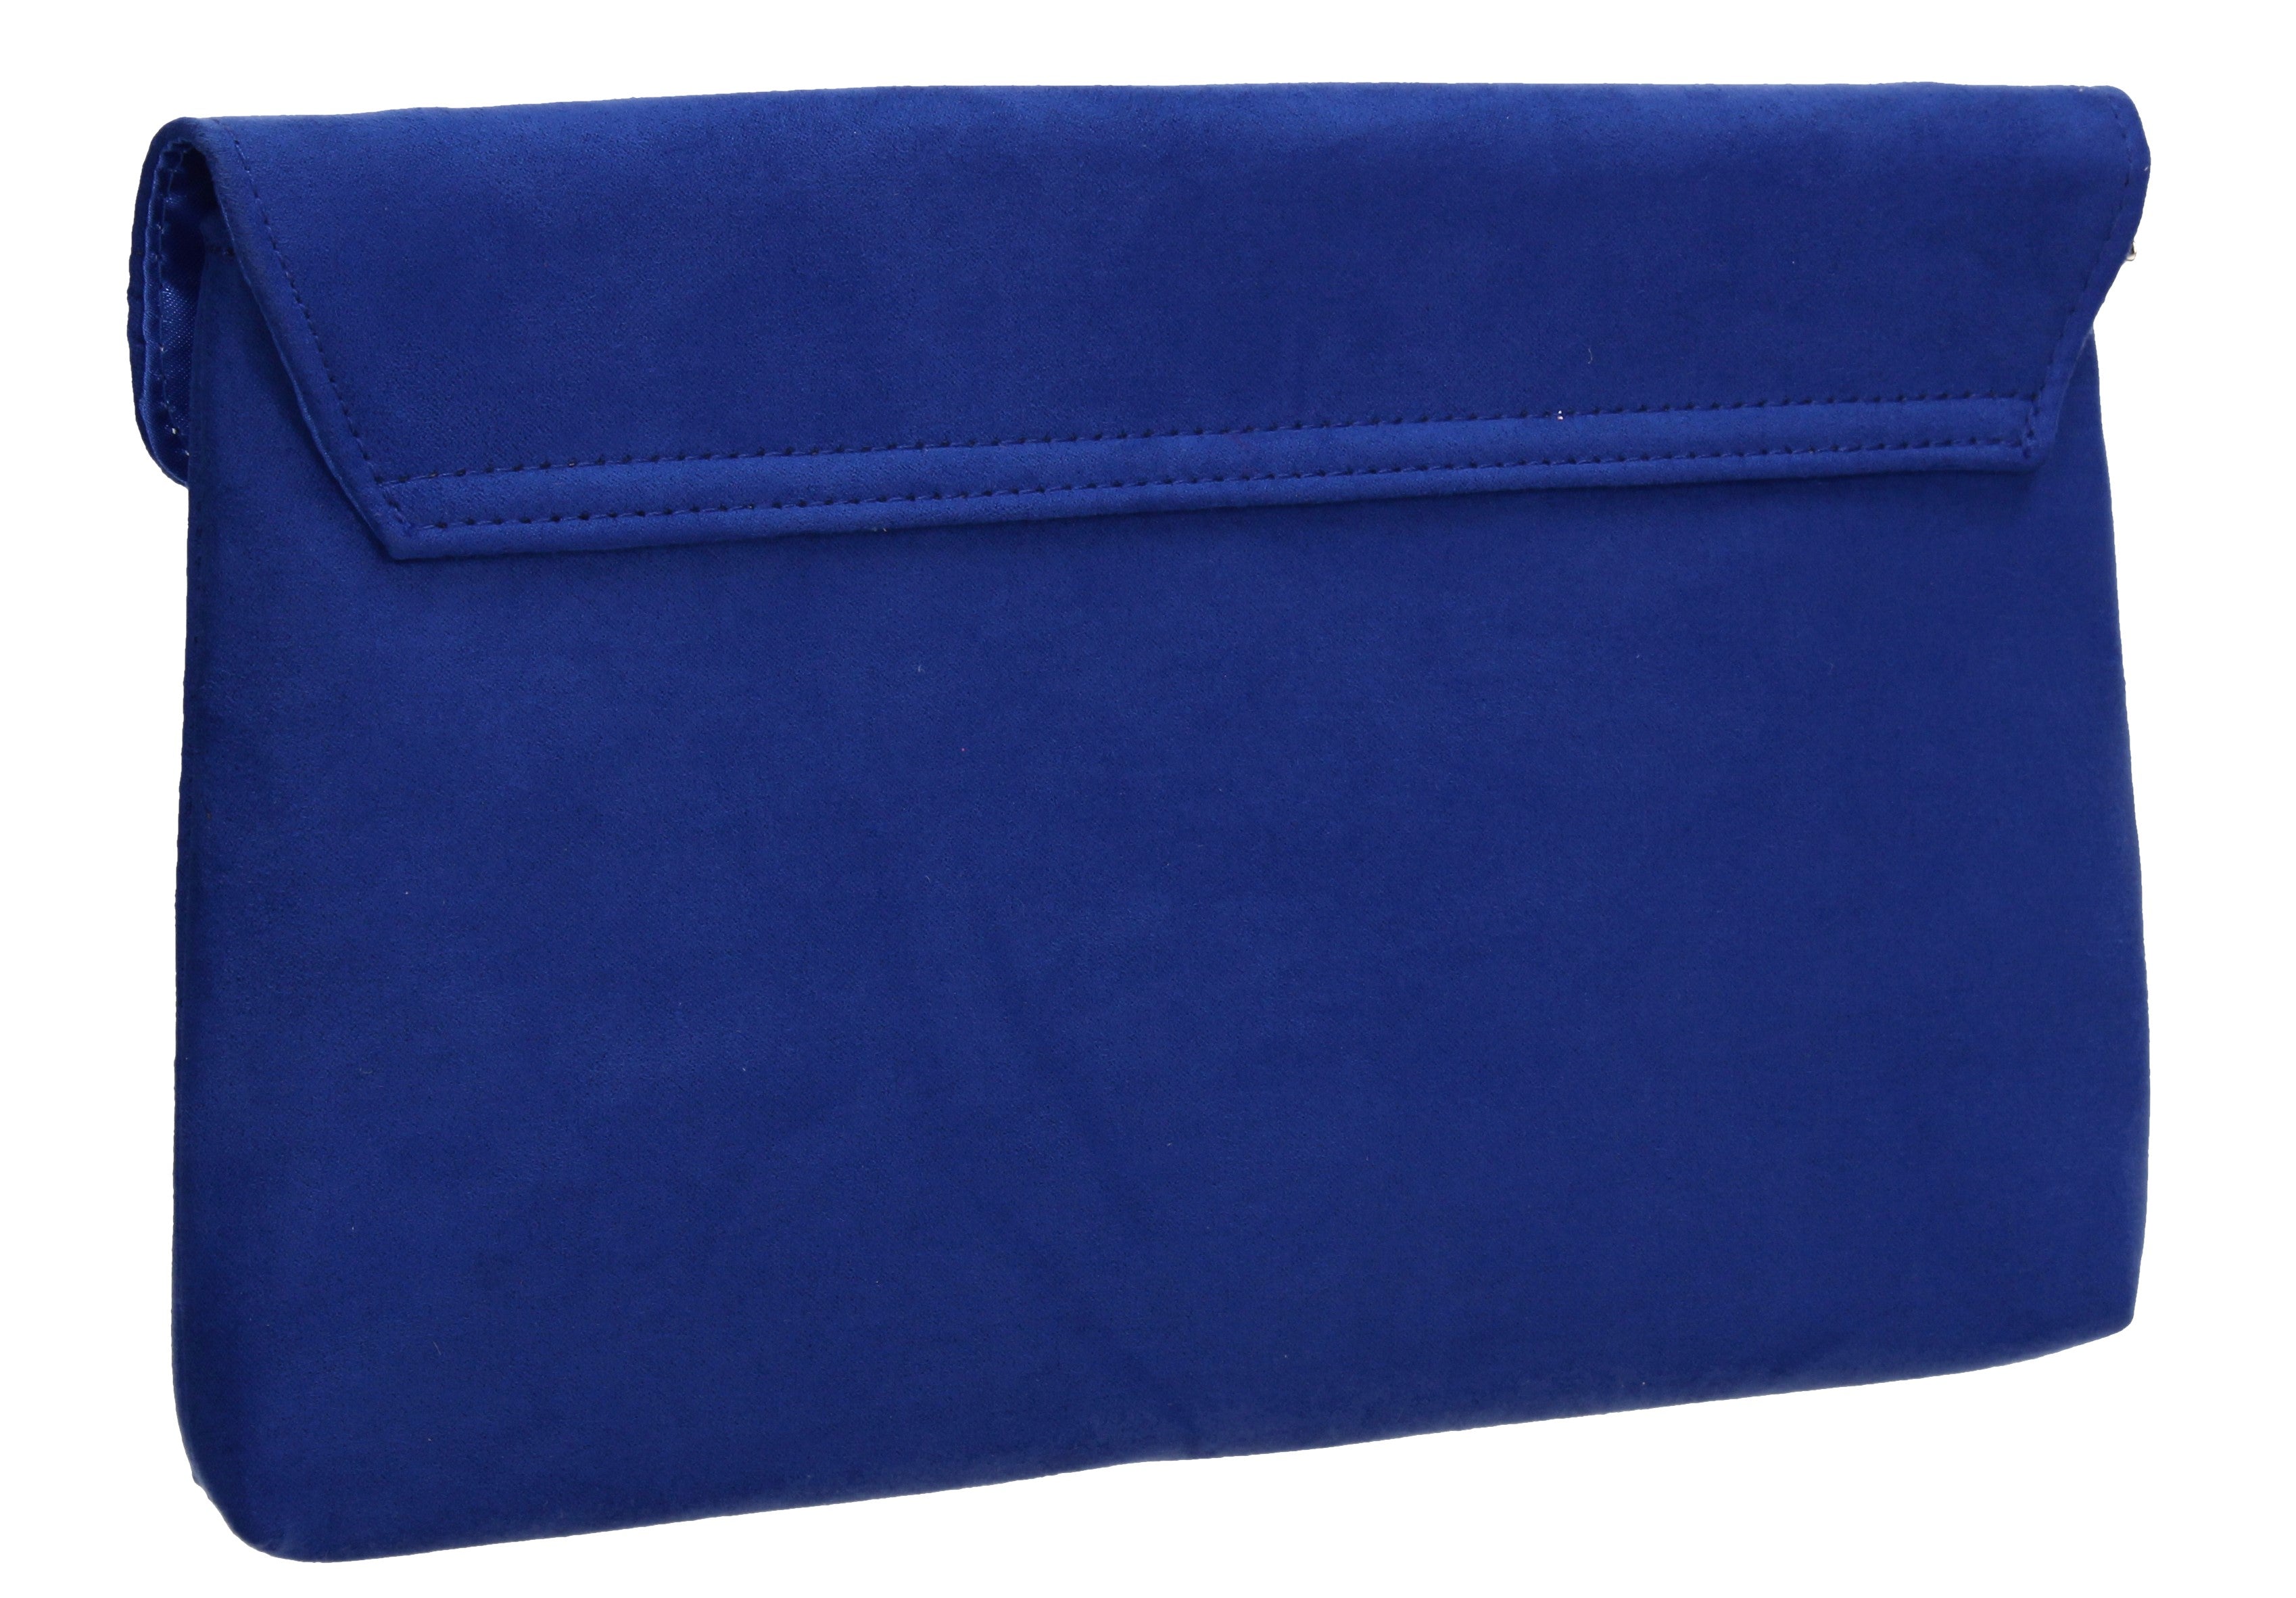 Alex Crossbody Clutch Bag – Royal blue | East 73rd